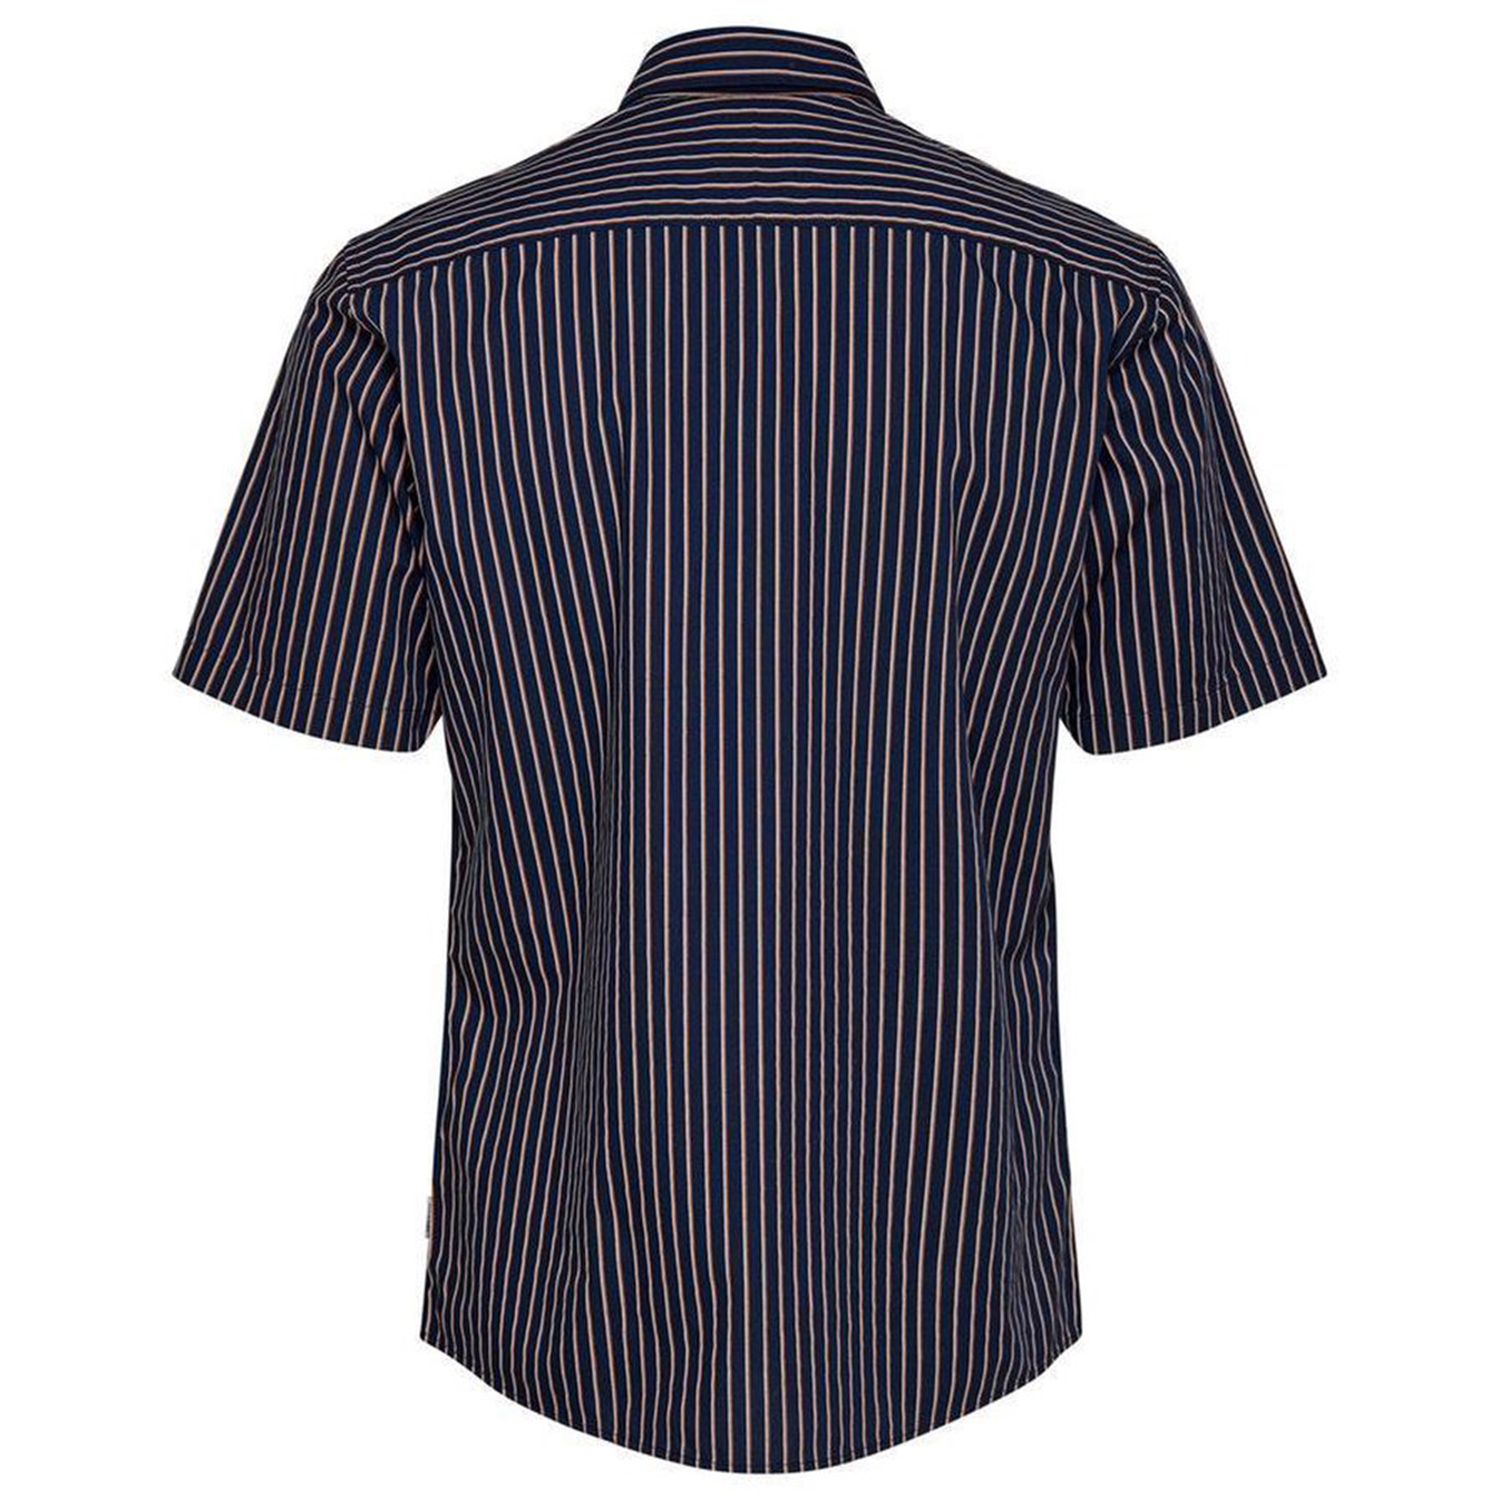 پیراهن آستین کوتاه مردانه اونلی اند سانز مدل راه راه کد SANE-22015476 -  - 2